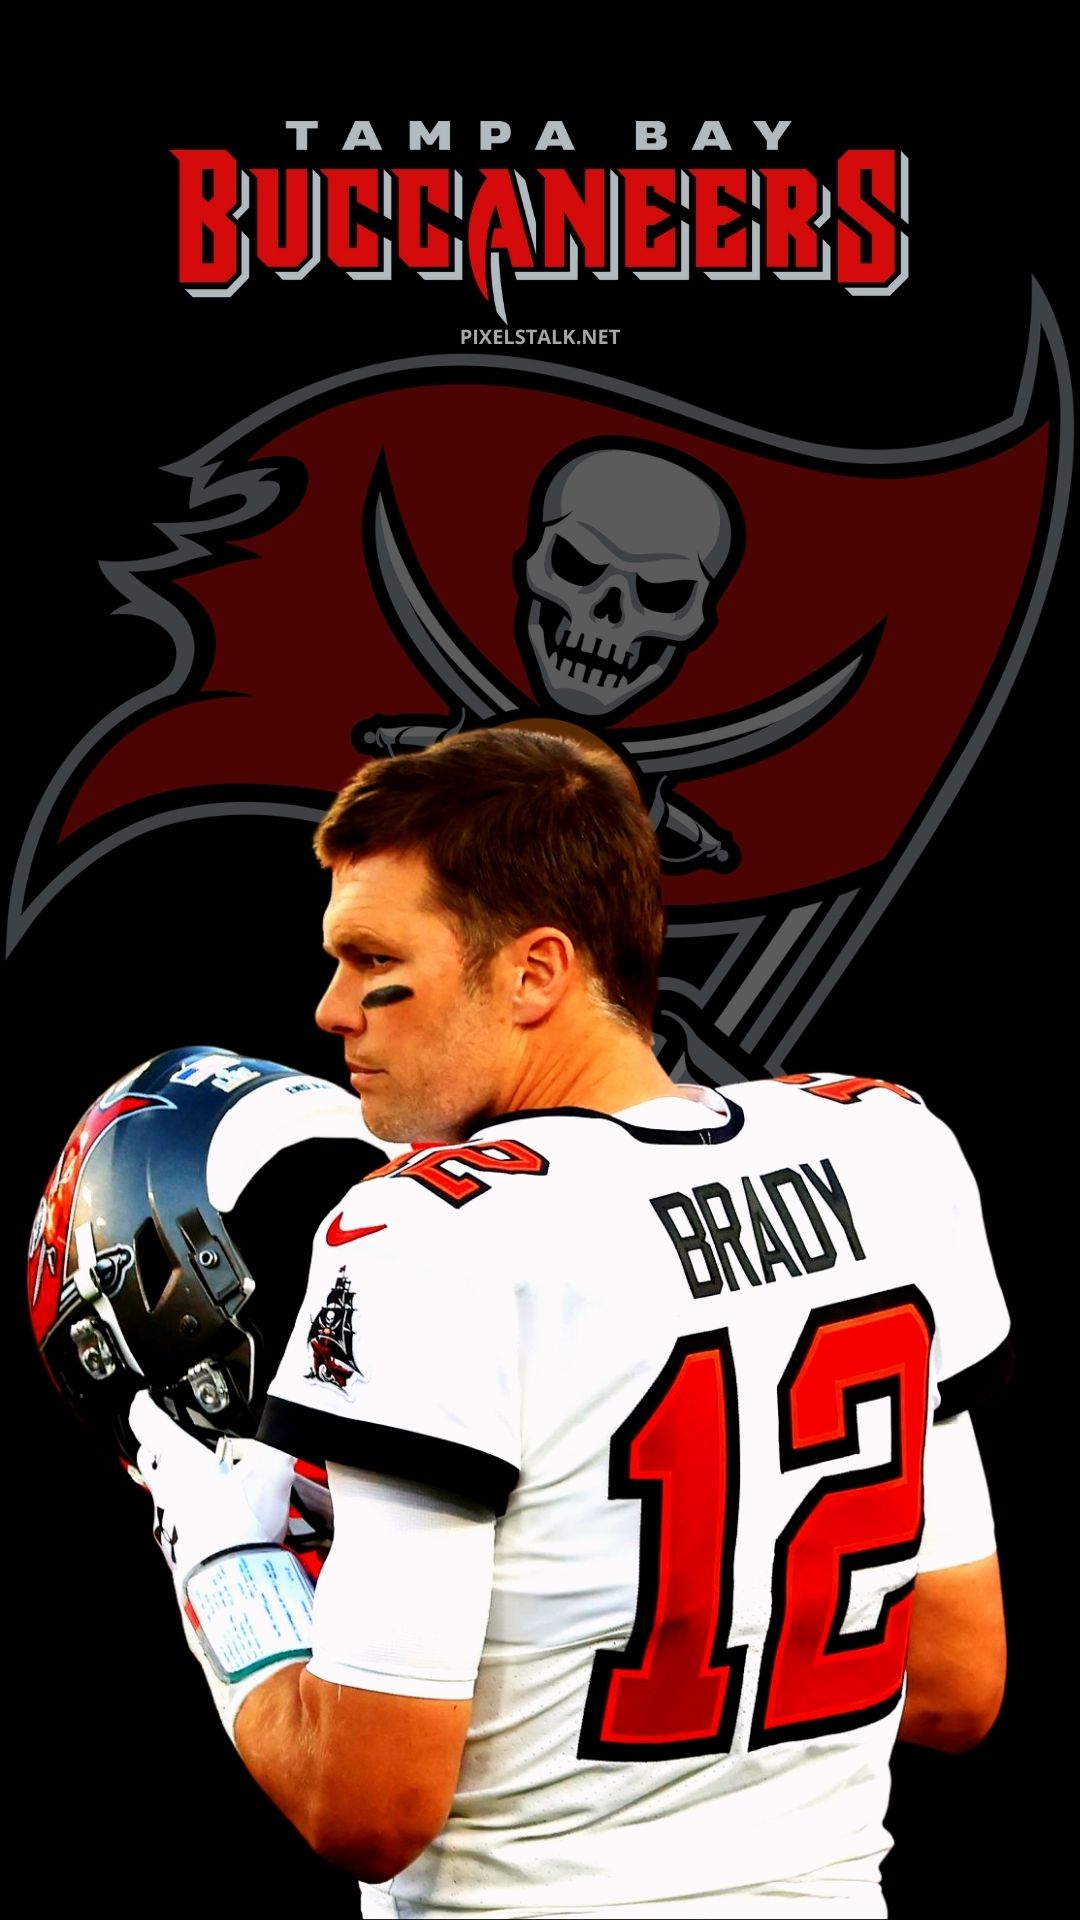 Tom Brady in a Bucs uniform